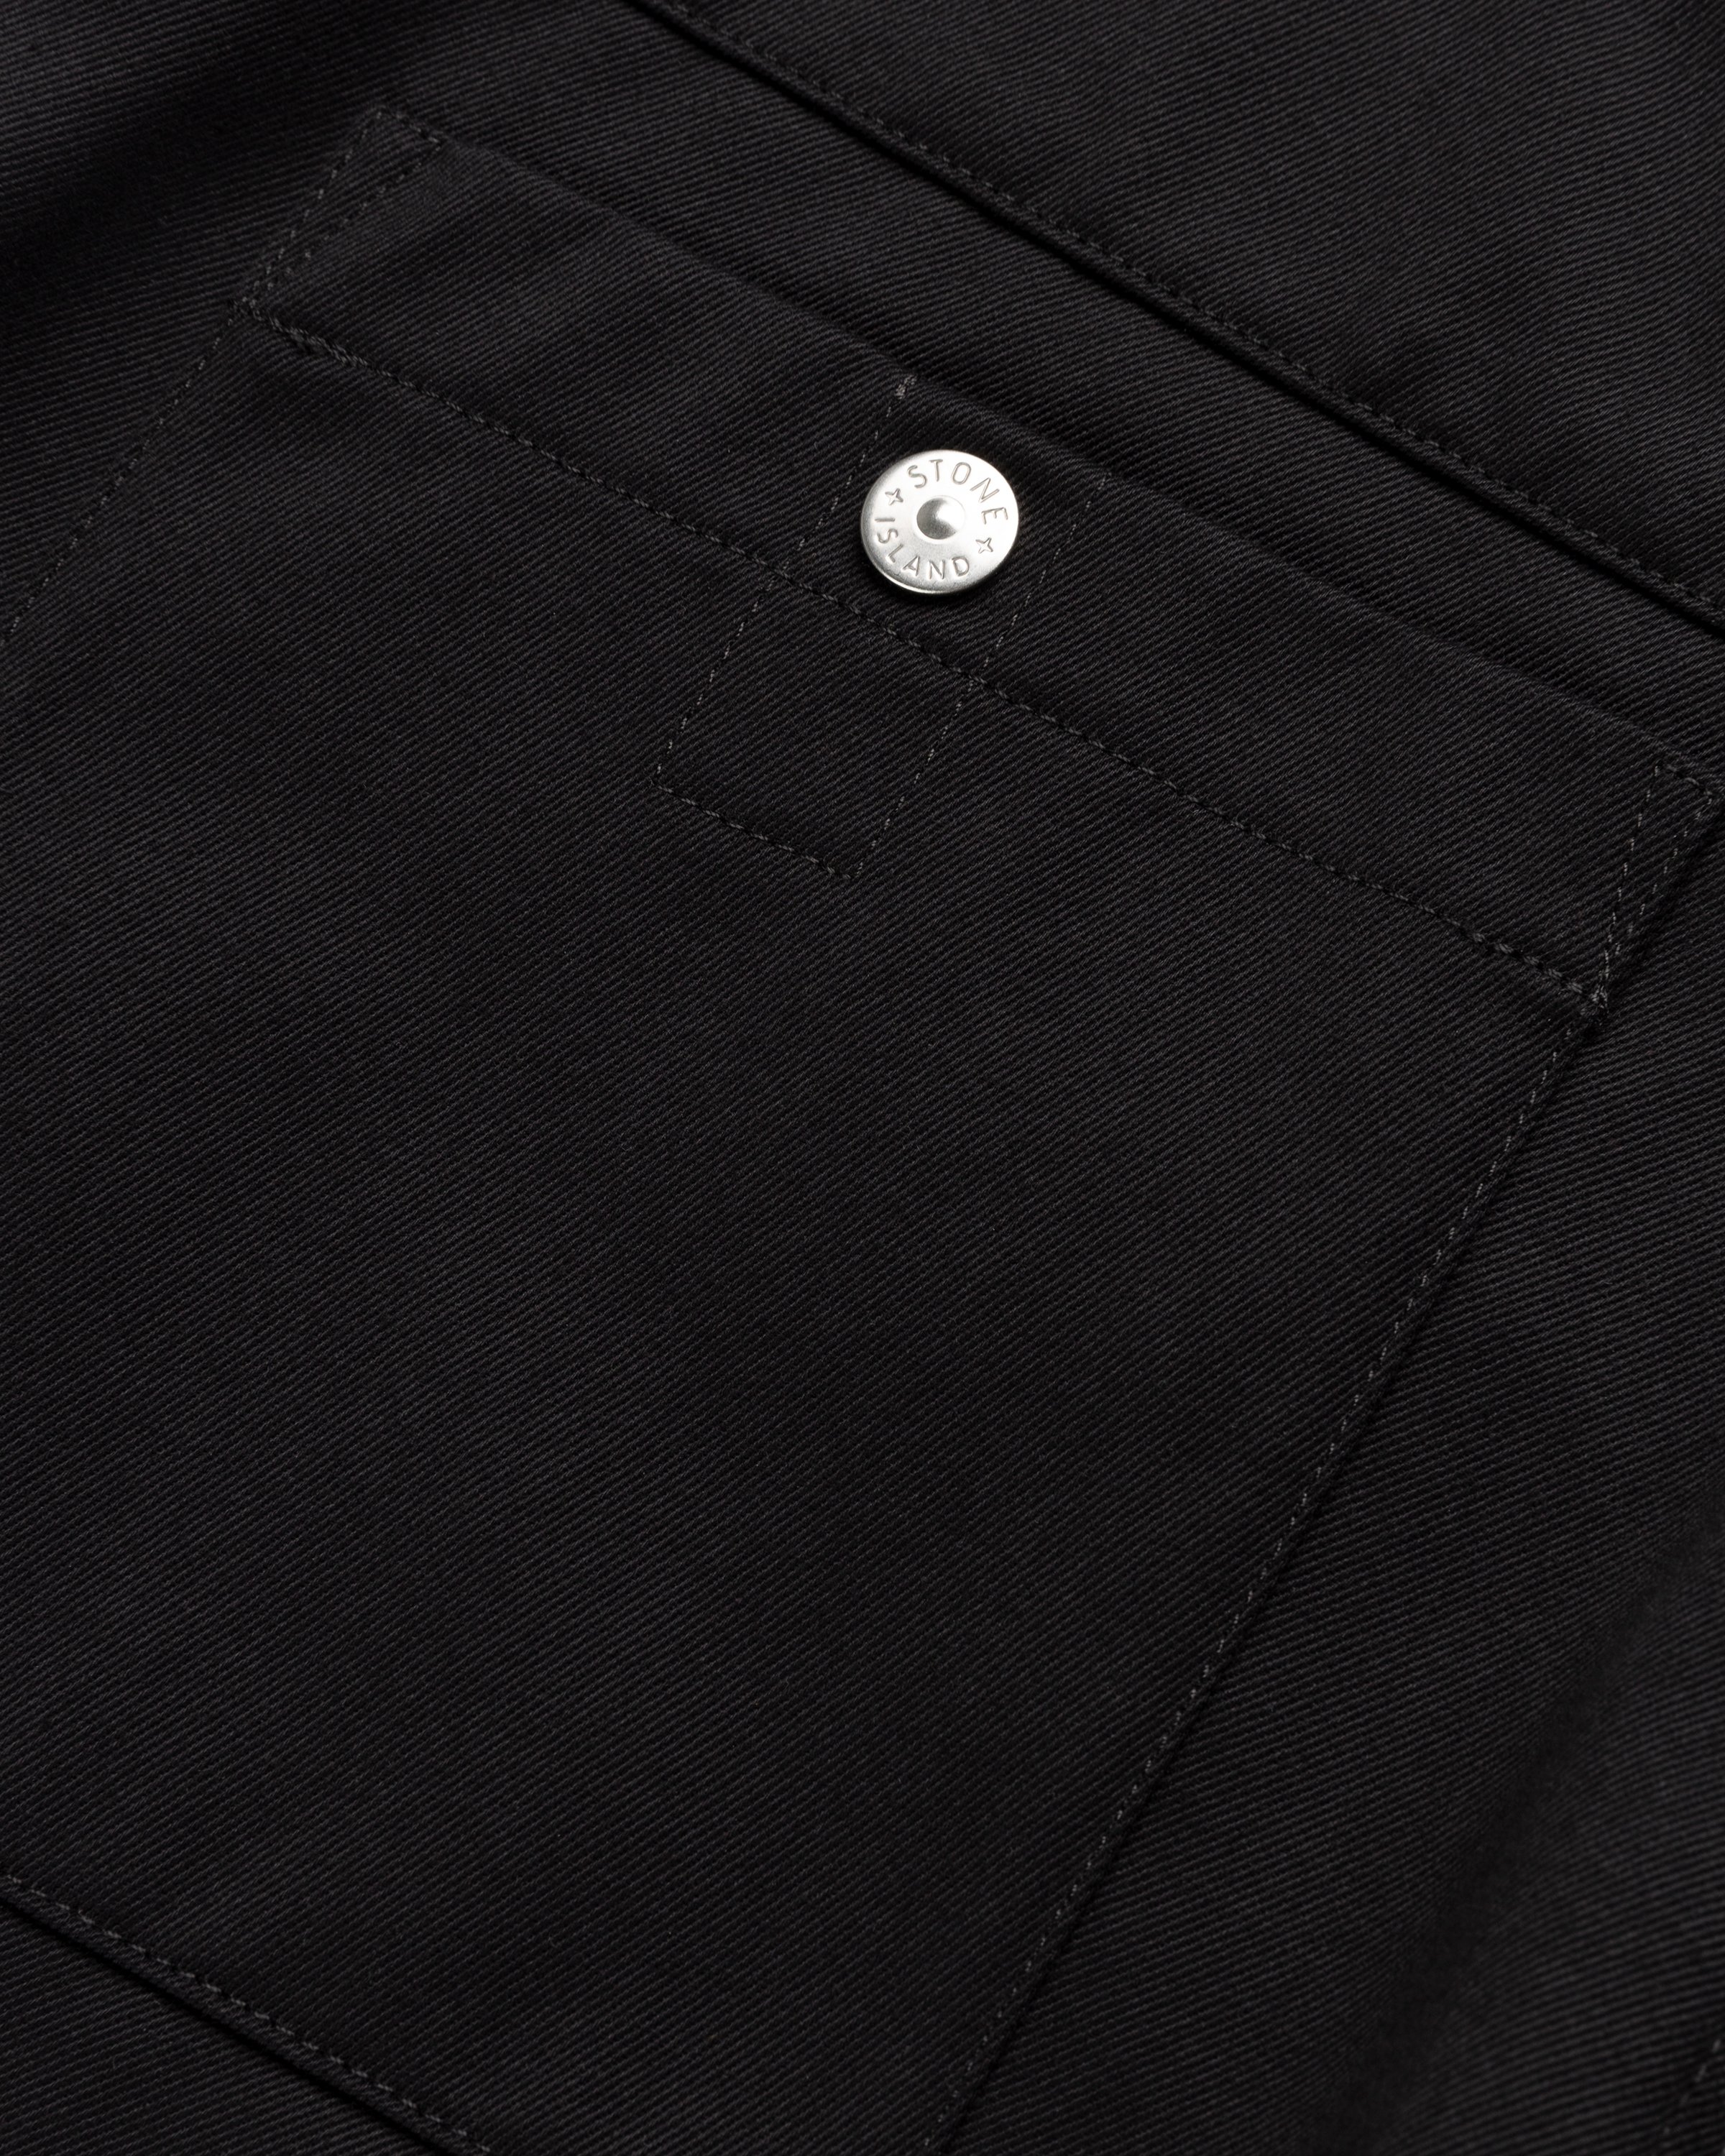 Stone Island - 31928 Gabardine Chino Pants Black - Clothing - Black - Image 6